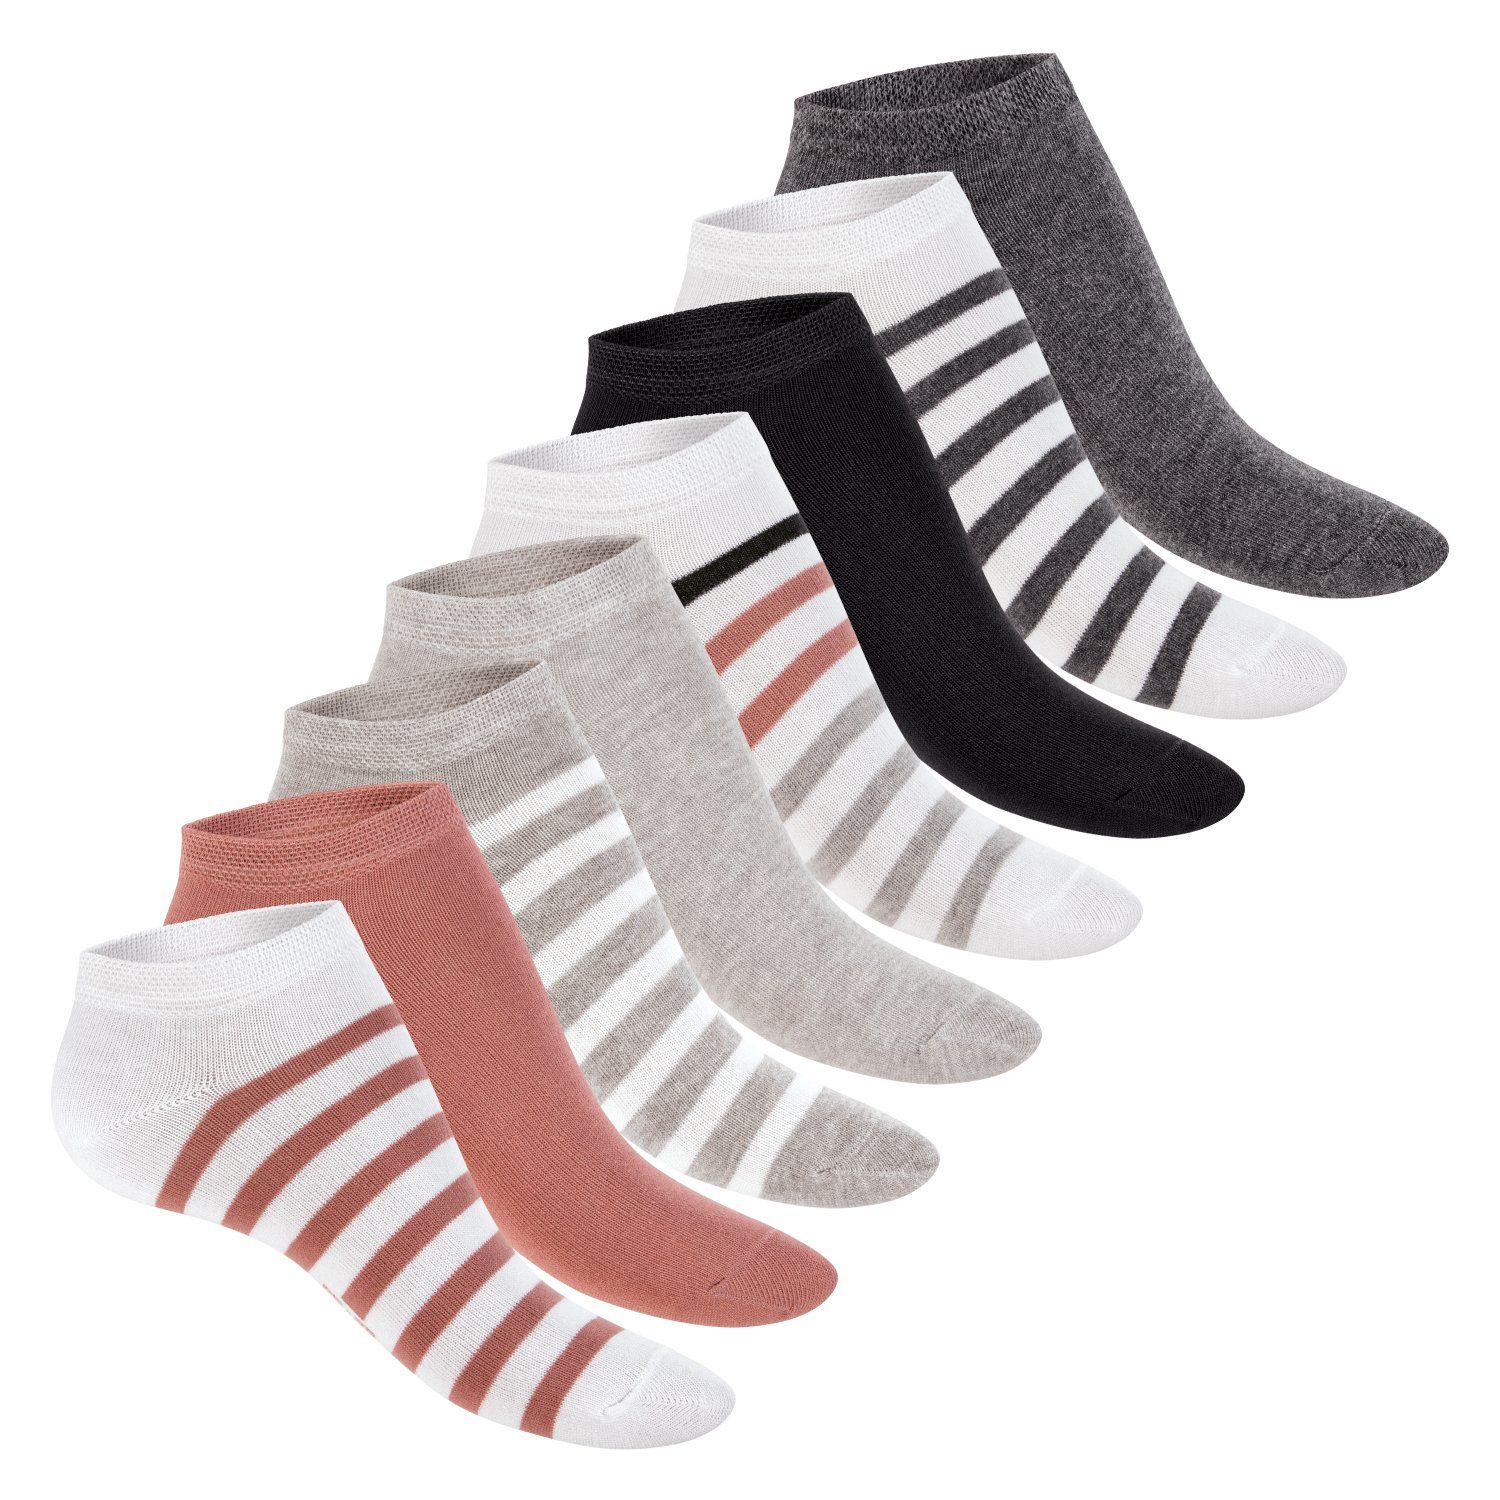 Weiss-Bunt mit Sneaker Paar Paar) (8 Söckchen Kurze süße Damen 8 Socken Footstar Muster Sneakersocken /